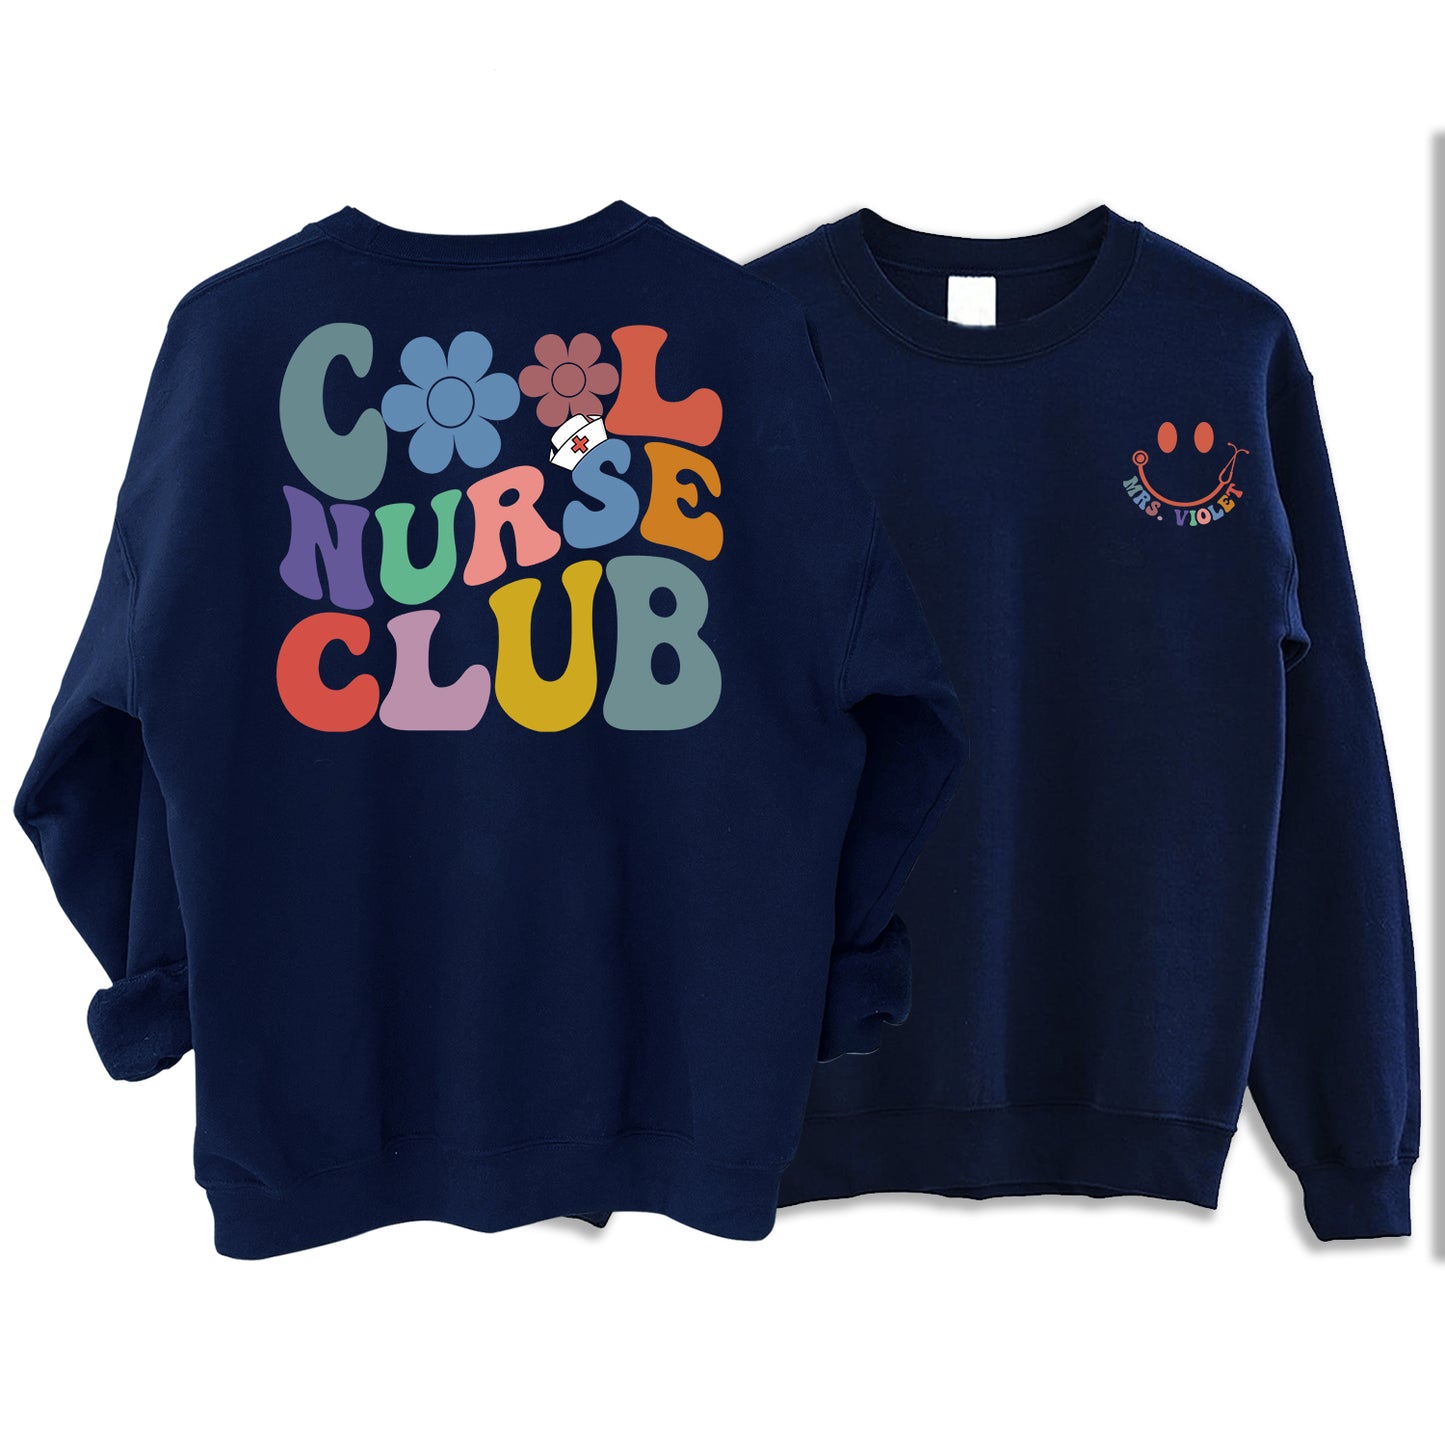 Personalized Cool Nurse Club Sweatshirt - Registered Nurse Sweatshirt With Name, RN Sweatshirt, Nurse Custom Shirt